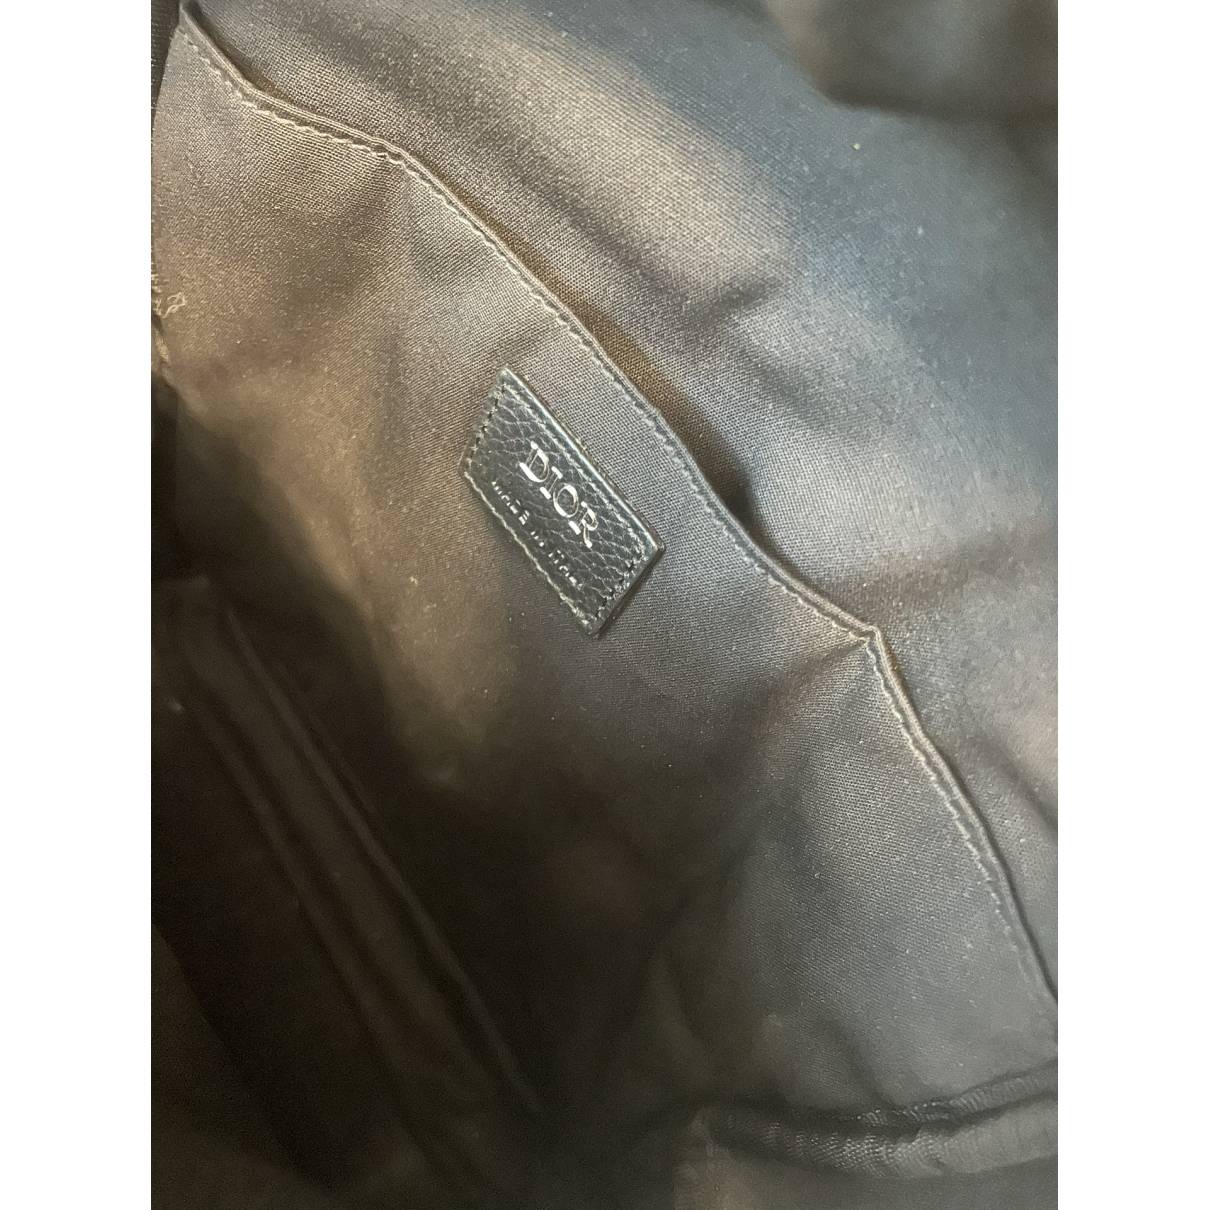 Cloth backpack Dior